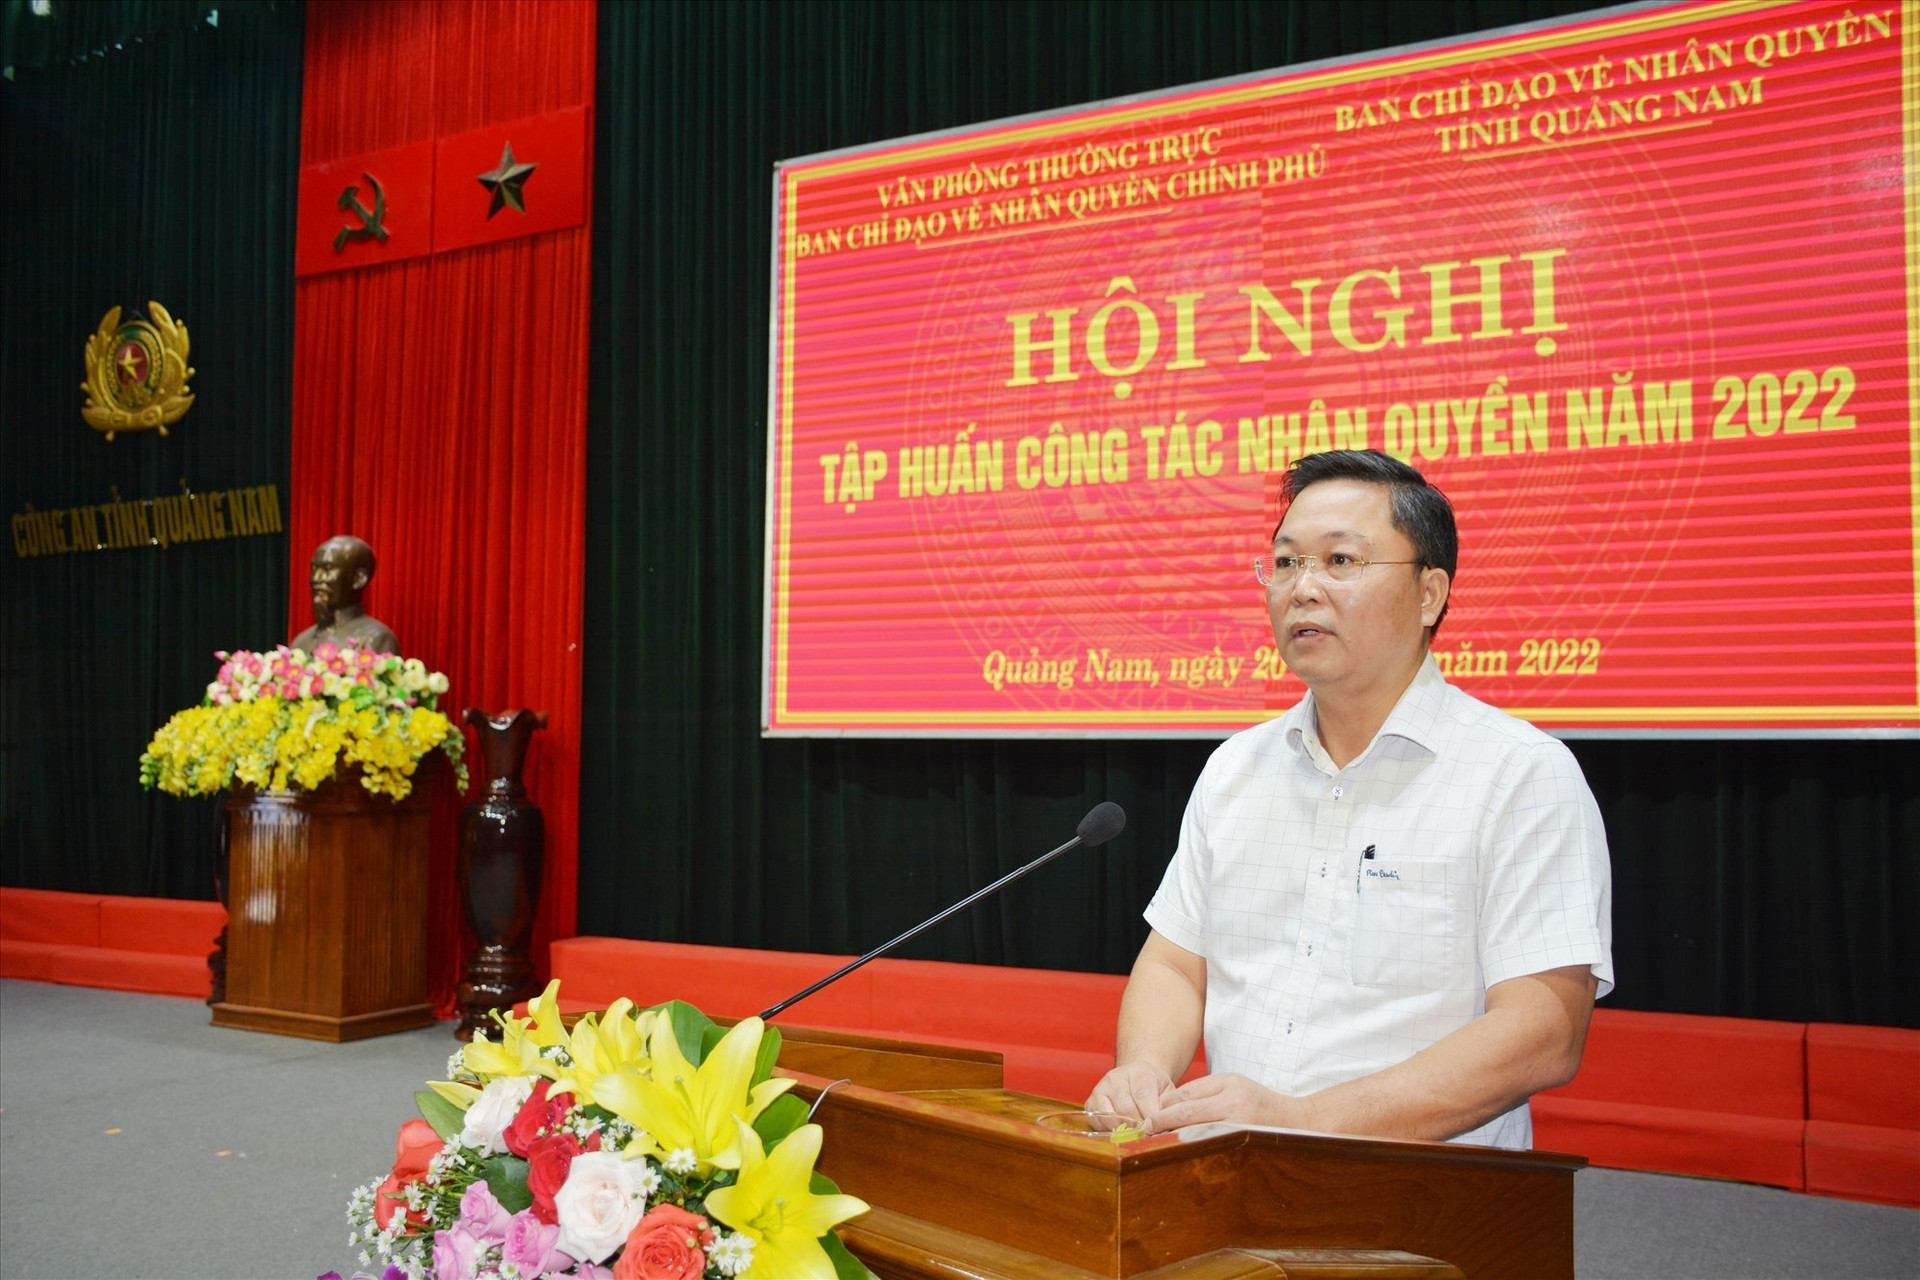 Đồng chí Lê Trí Thanh - Chủ tịch UBND tỉnh, Trưởng Ban Chỉ đạo về nhân quyền tỉnh phát biểu tại hội nghị. Ảnh: M.T